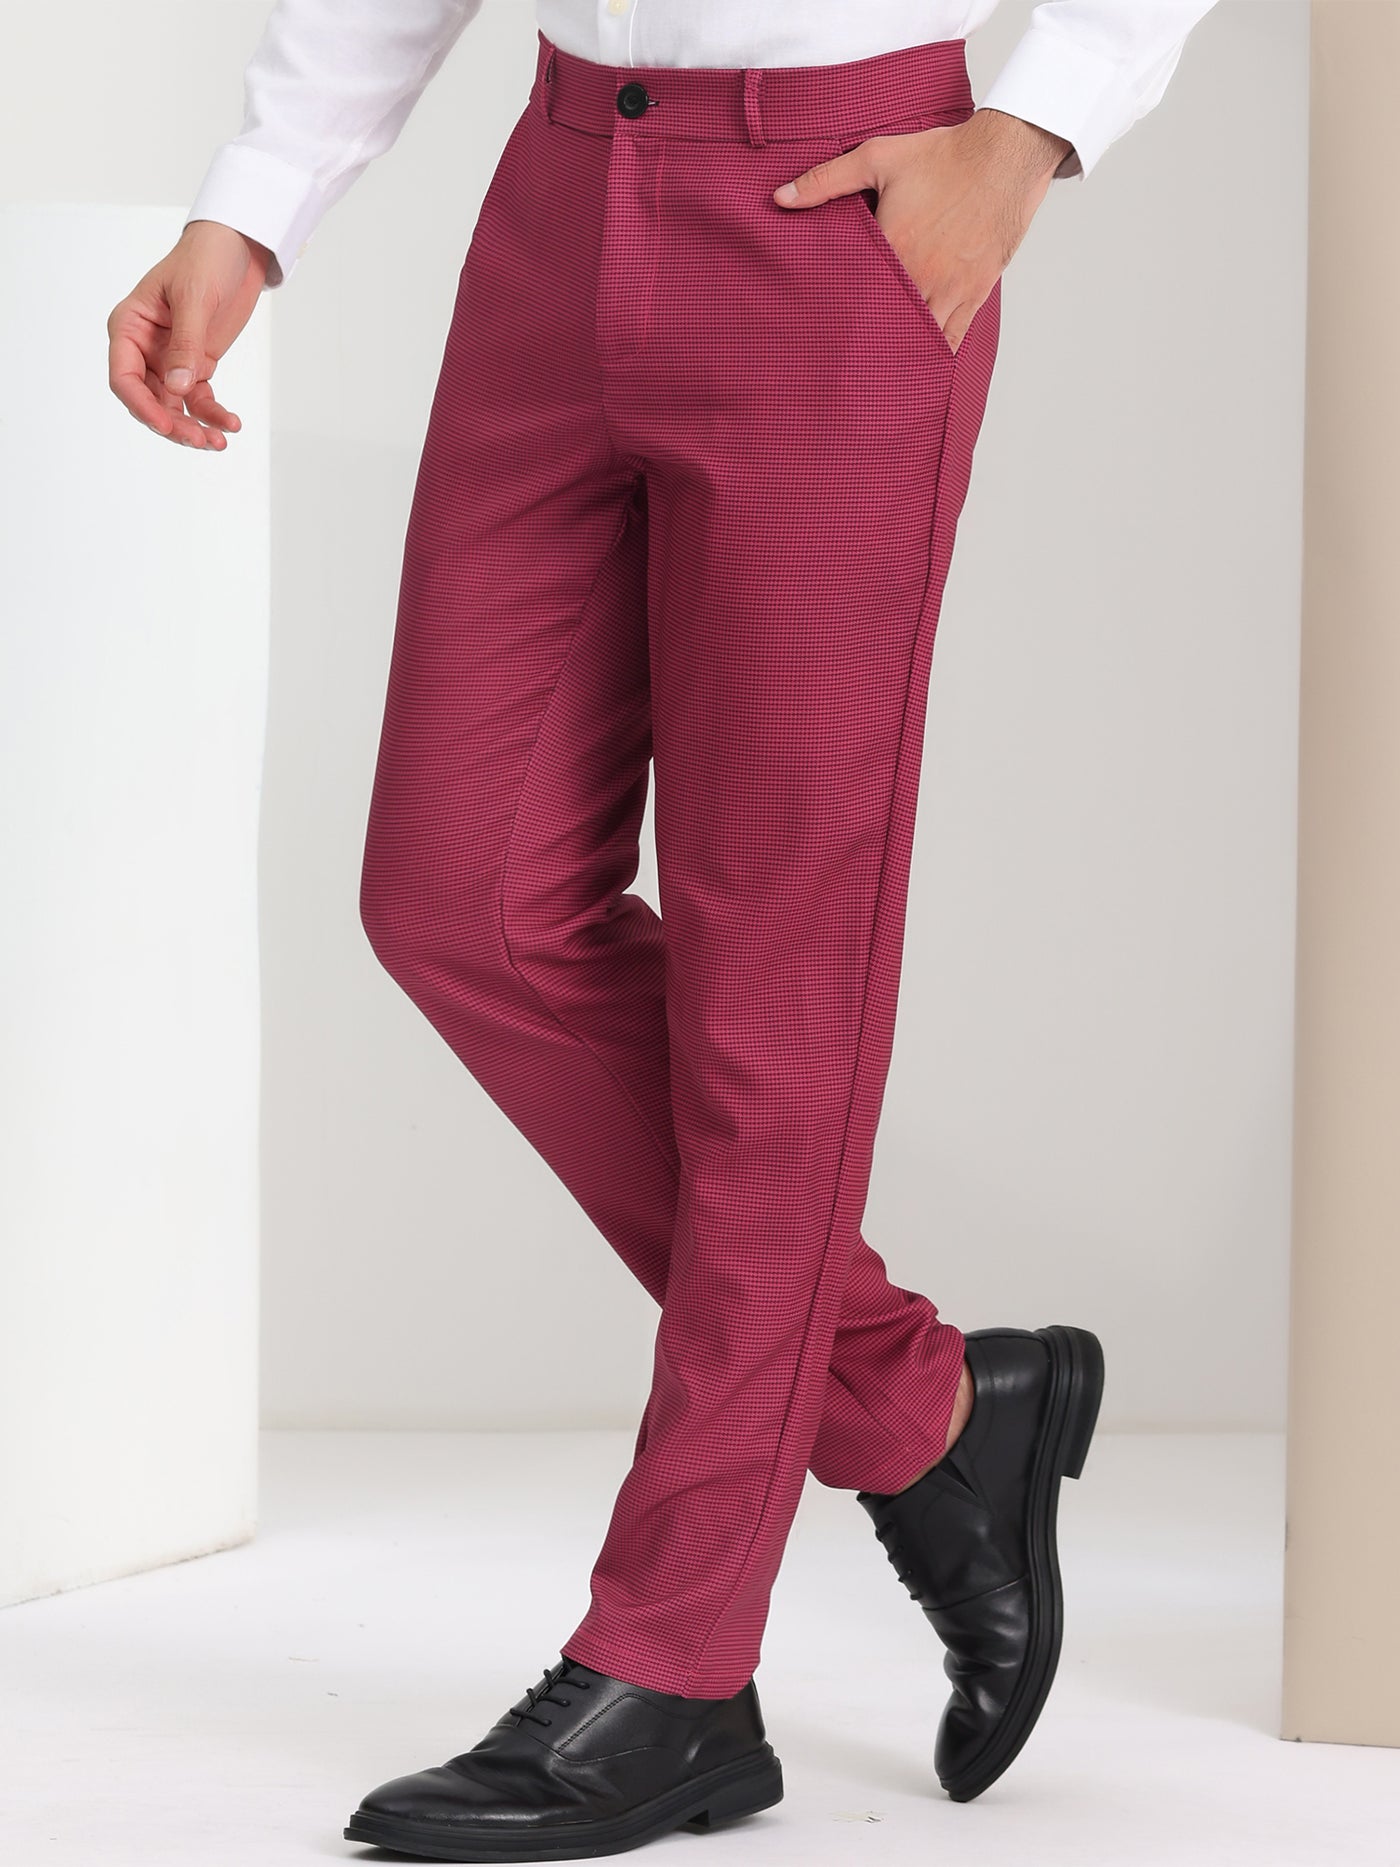 Bublédon Men's Checked Suit Flat Front Stretch Elastic Waist Plaid Pants